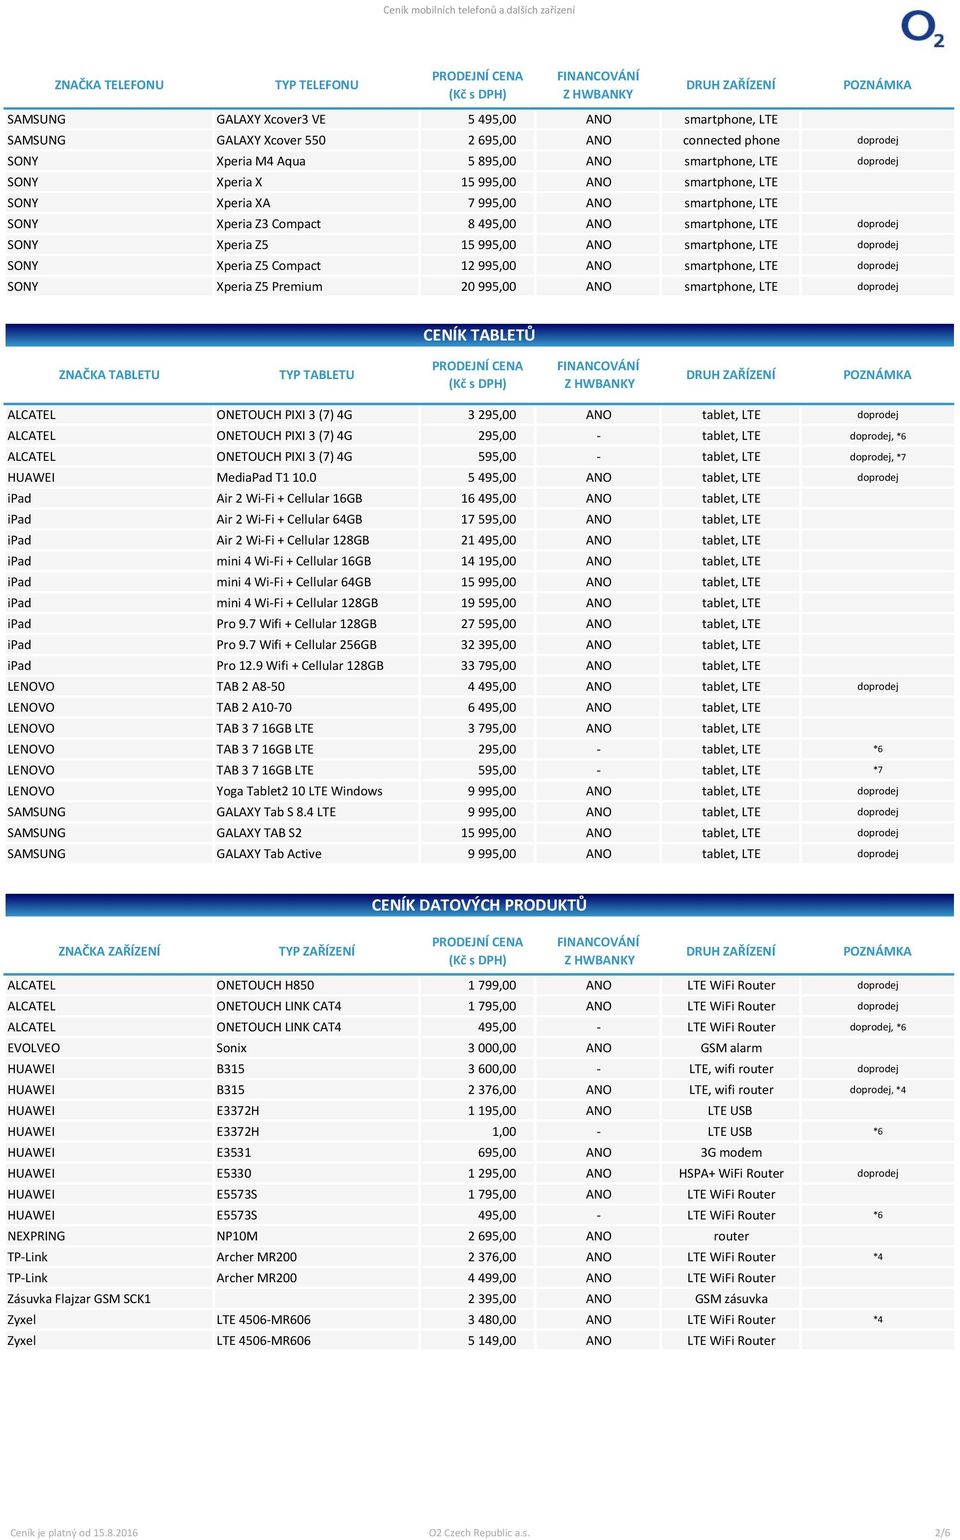 LTE doprodej SONY Xperia Z5 Compact 12 995,00 ANO smartphone, LTE doprodej SONY Xperia Z5 Premium 20 995,00 ANO smartphone, LTE doprodej CENÍK TABLETŮ ZNAČKA TABLETU TYP TABLETU ALCATEL ONETOUCH PIXI